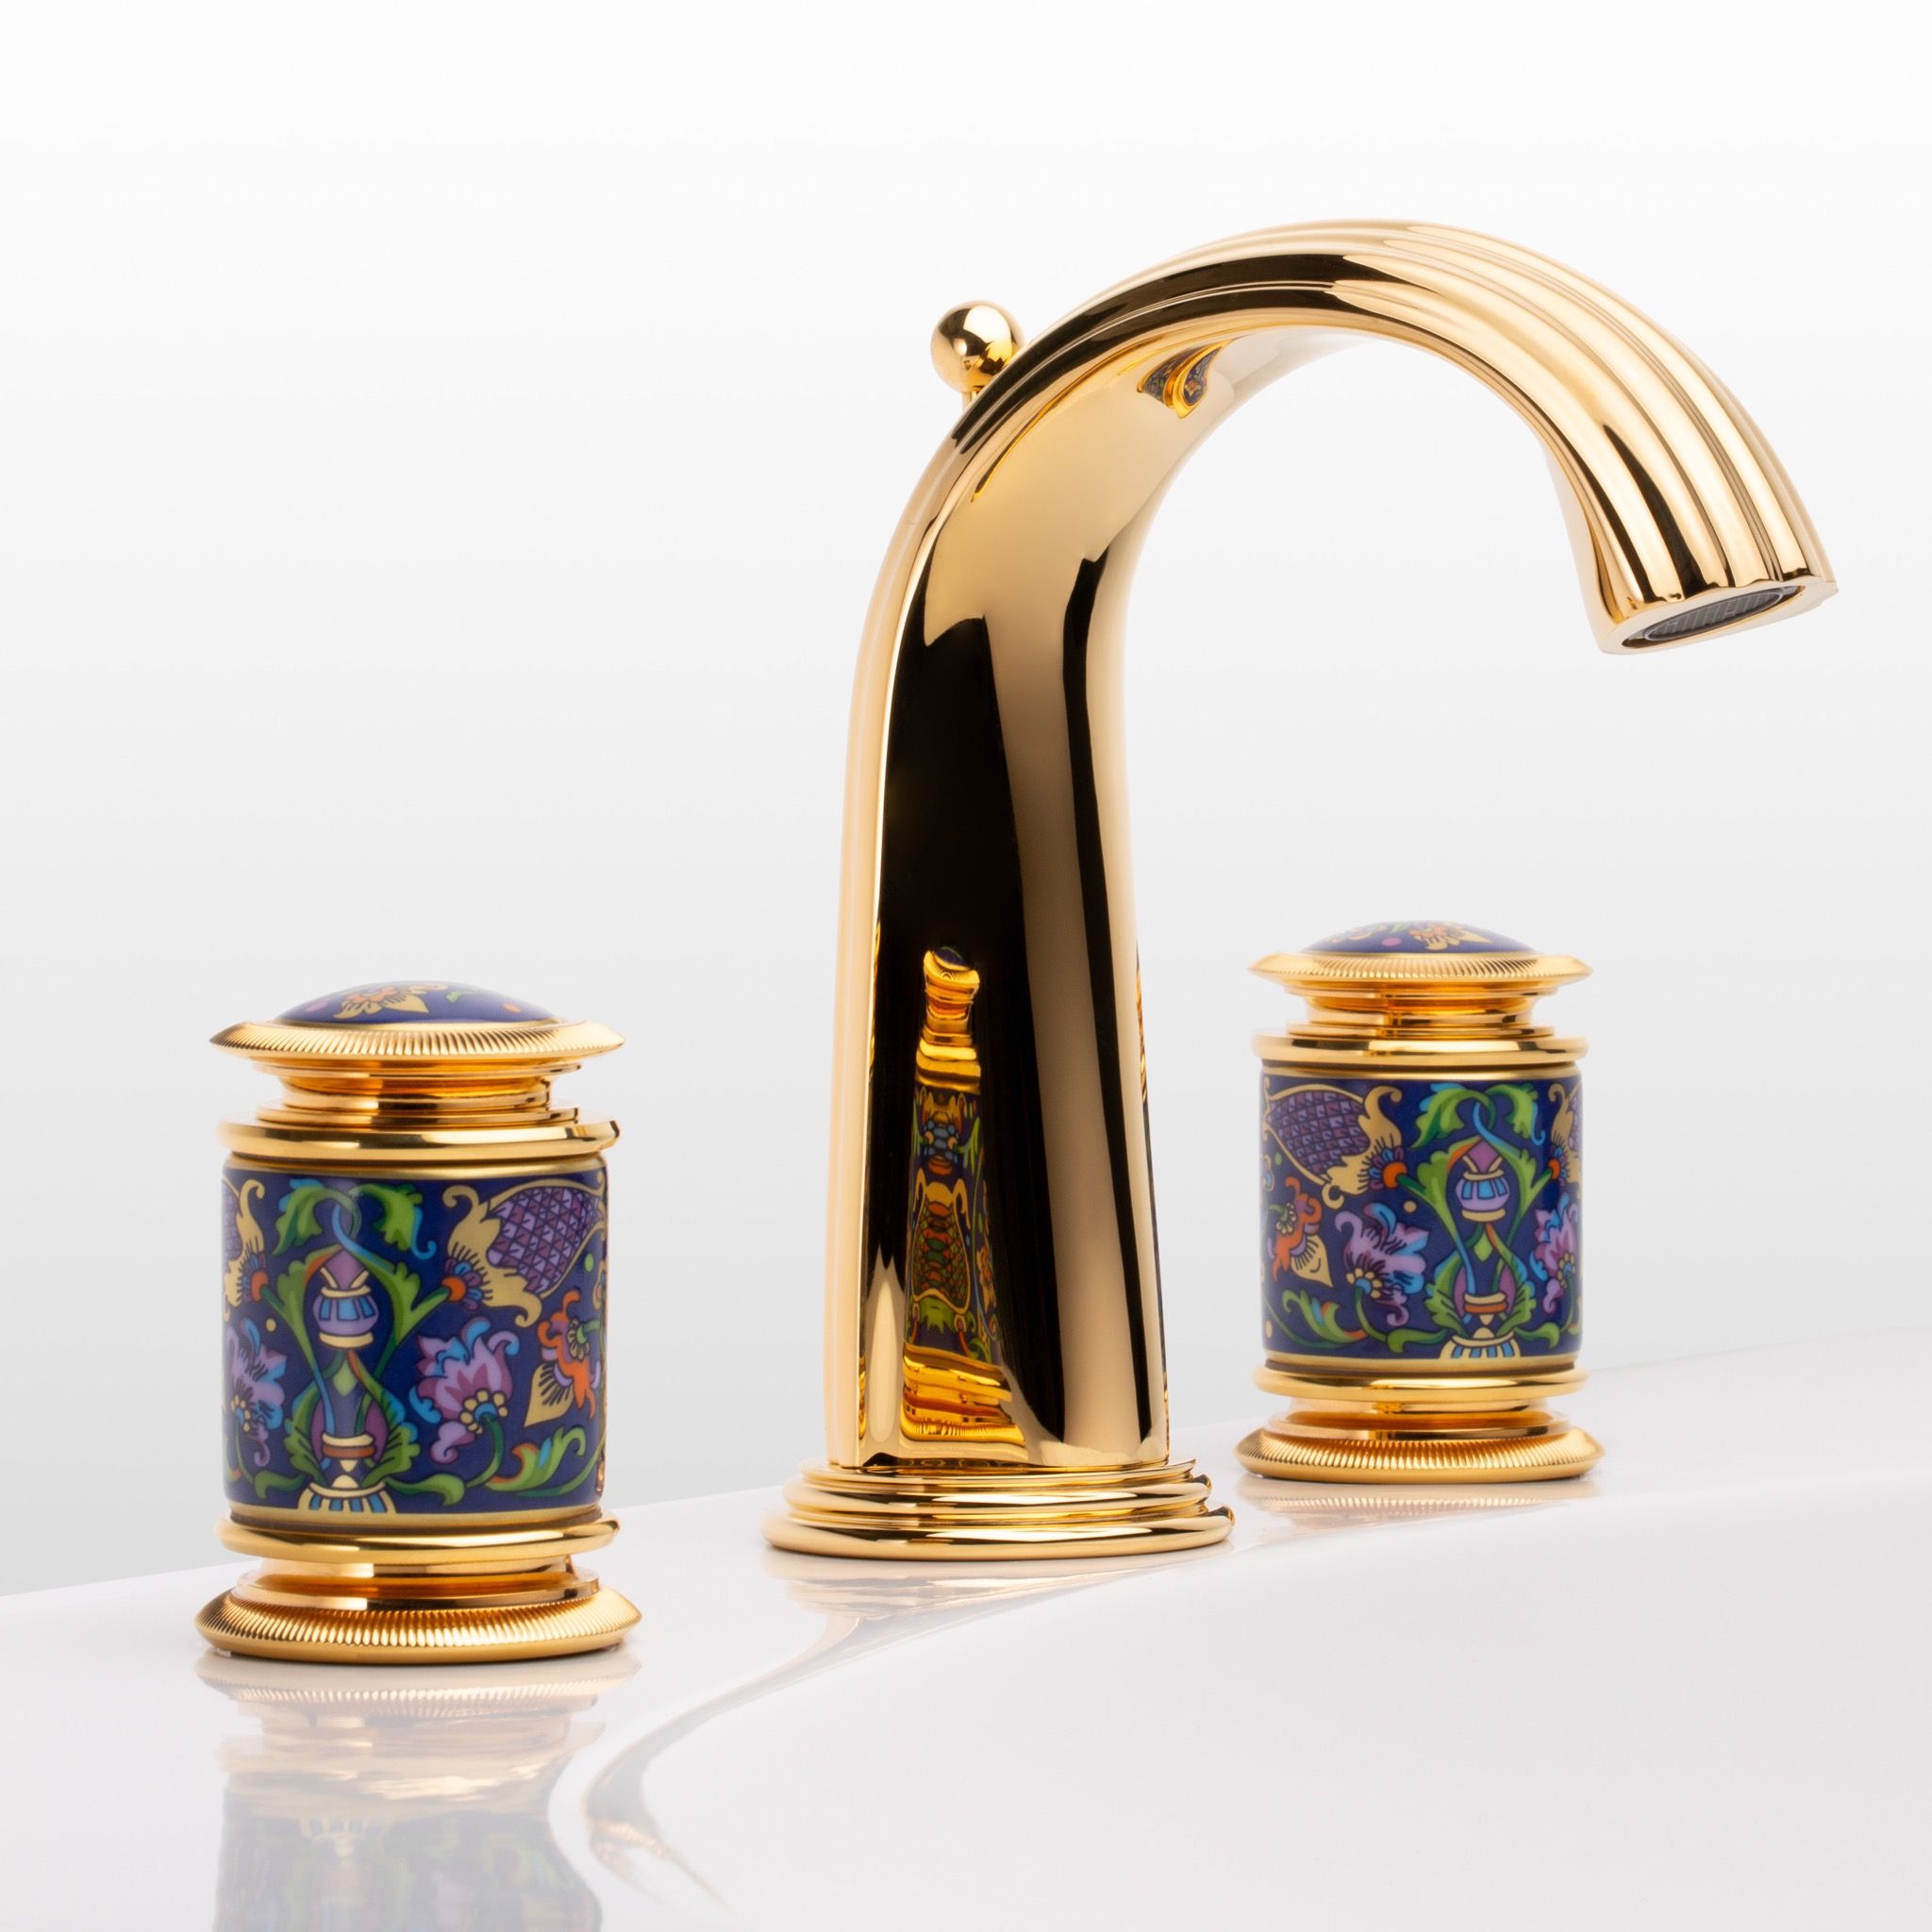  Vòi chậu rửa mặt cổ điển Vassili polished gold bằng đồng - 1301 